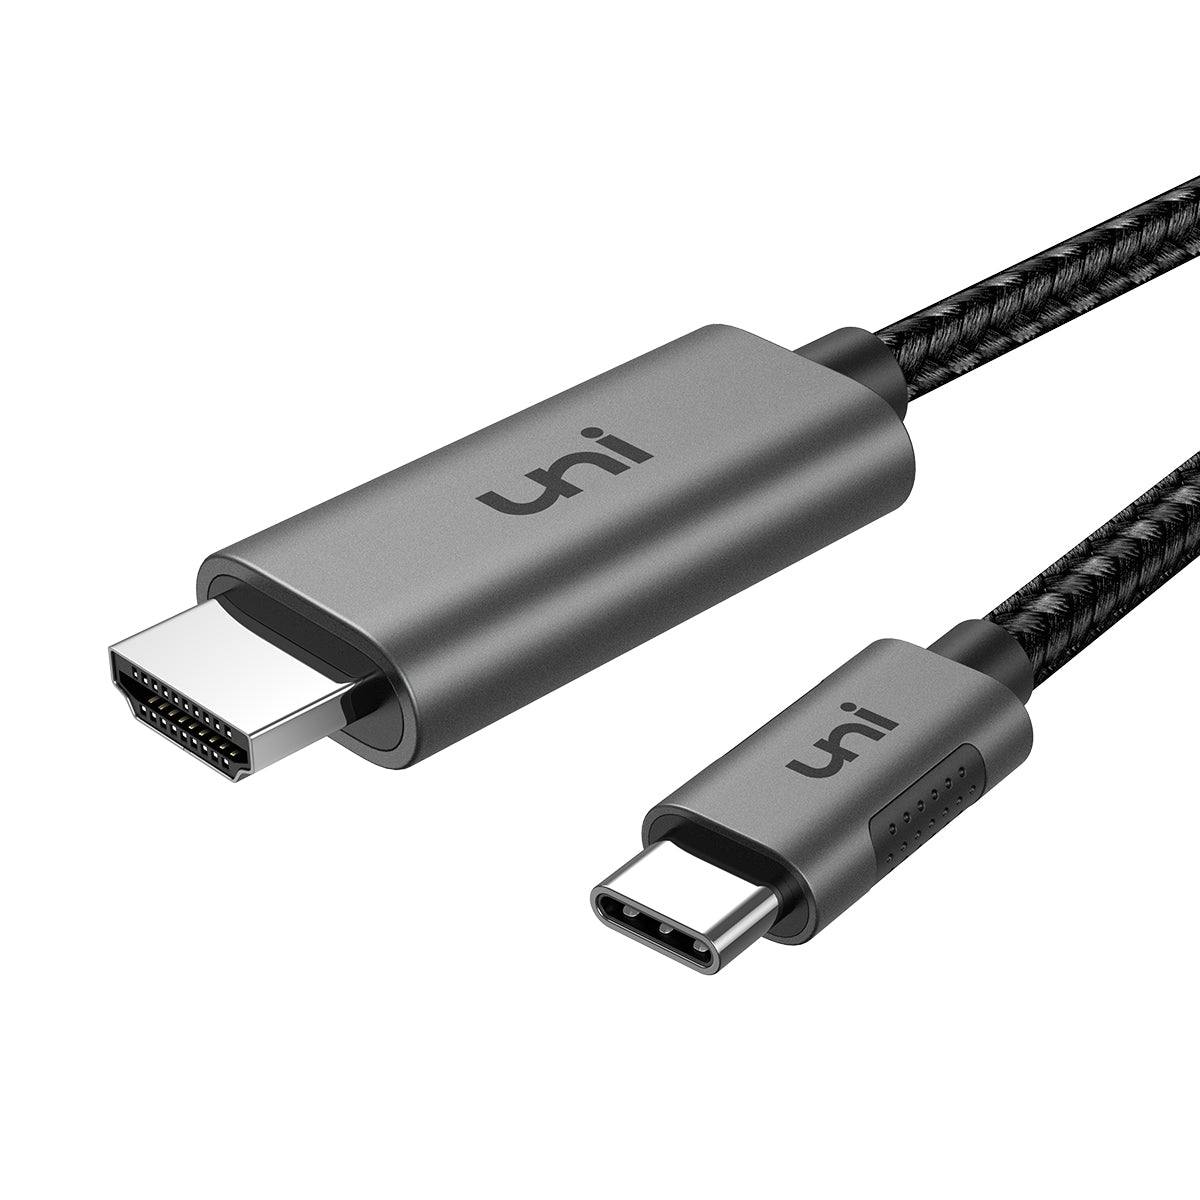 nogmaals Overvloedig Zorgvuldig lezen USB C to HDMI Cable 4K60Hz/ 2K144Hz Displays Aluminum, 3/6/10ft | uni®